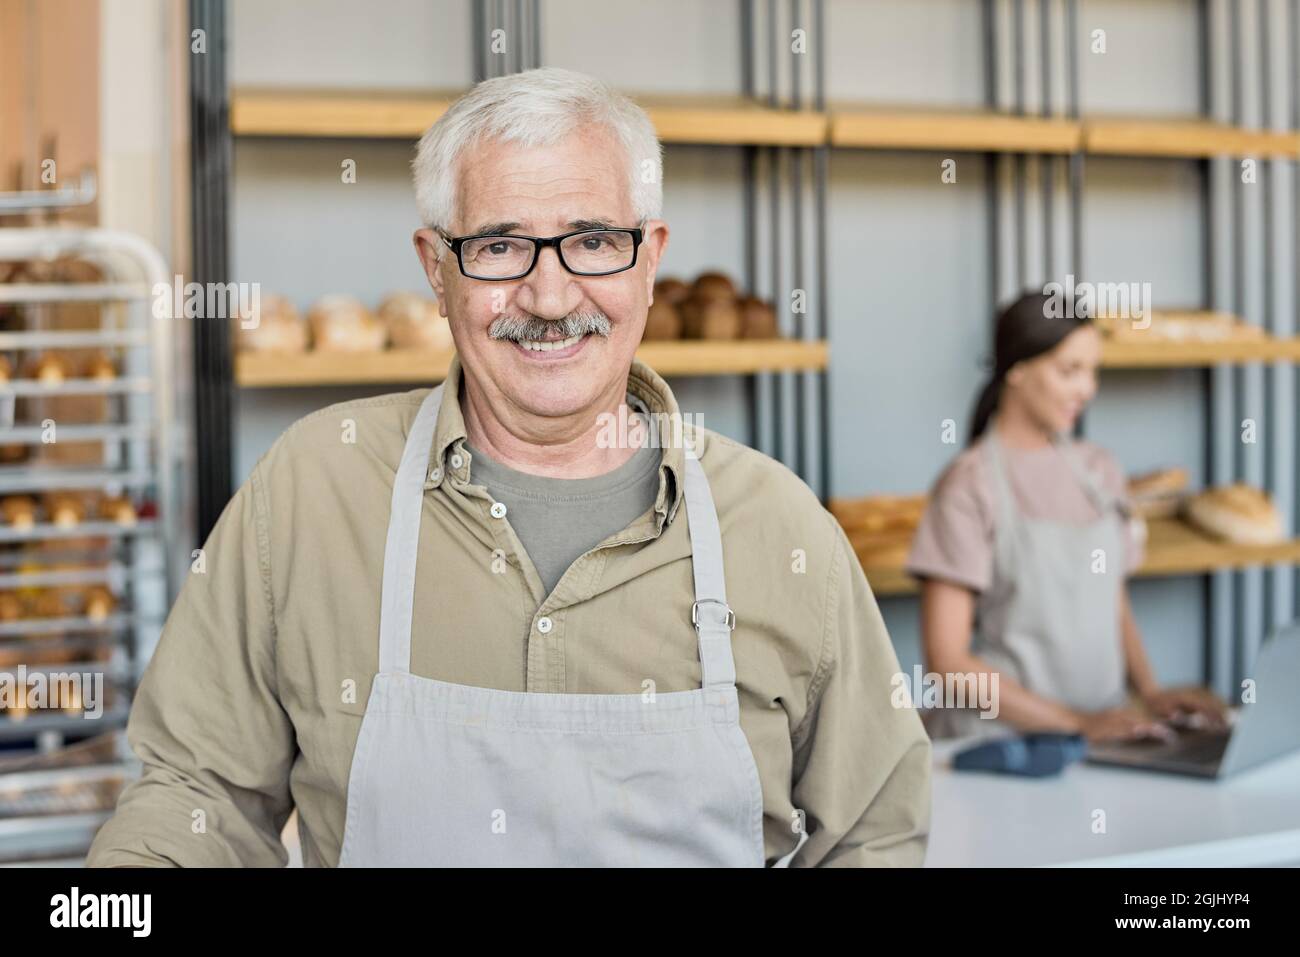 Portrait d'homme mûr souriant en tablier et lunettes debout contre l'exposition avec du pain frais dans la boulangerie Banque D'Images